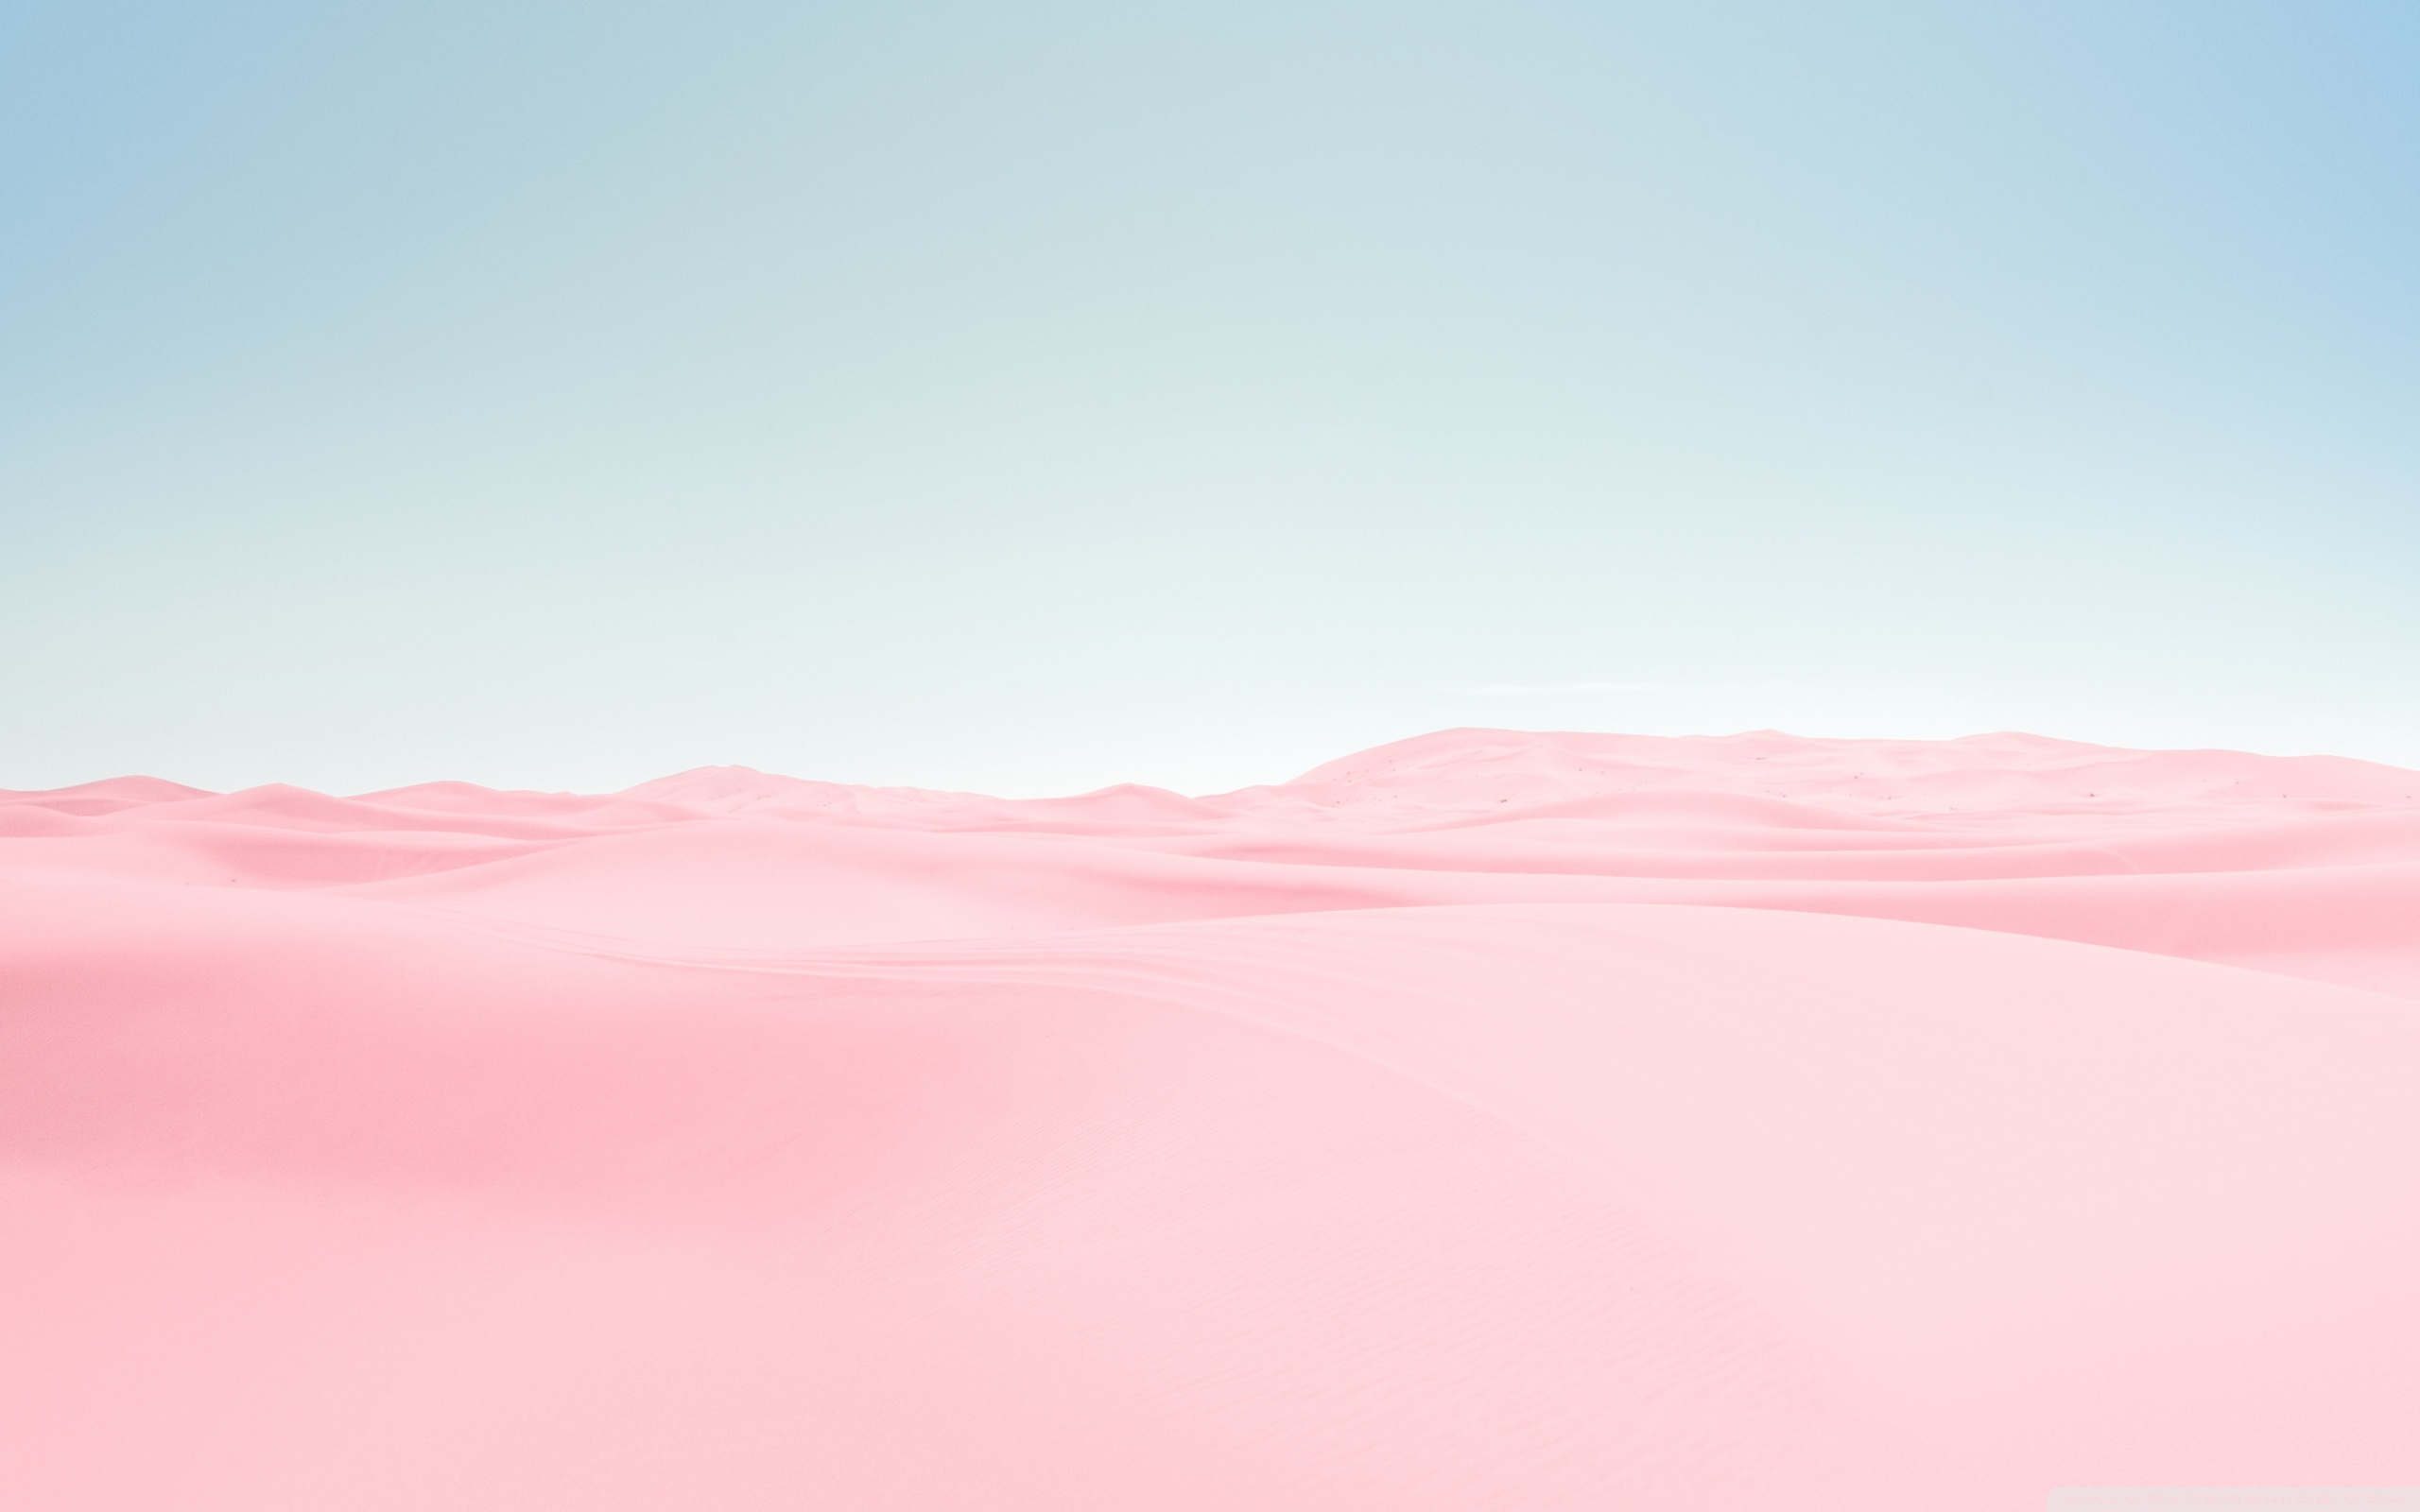 Với bức ảnh nền desktop Ultra HD mang đến không khí cực kỳ tươi mới với màu hồng pastel và phong cảnh sa mạc hùng vĩ. Chỉ cần nhìn vào hình nền này, bạn sẽ cảm thấy tràn đầy năng lượng mới để bắt đầu một ngày mới.